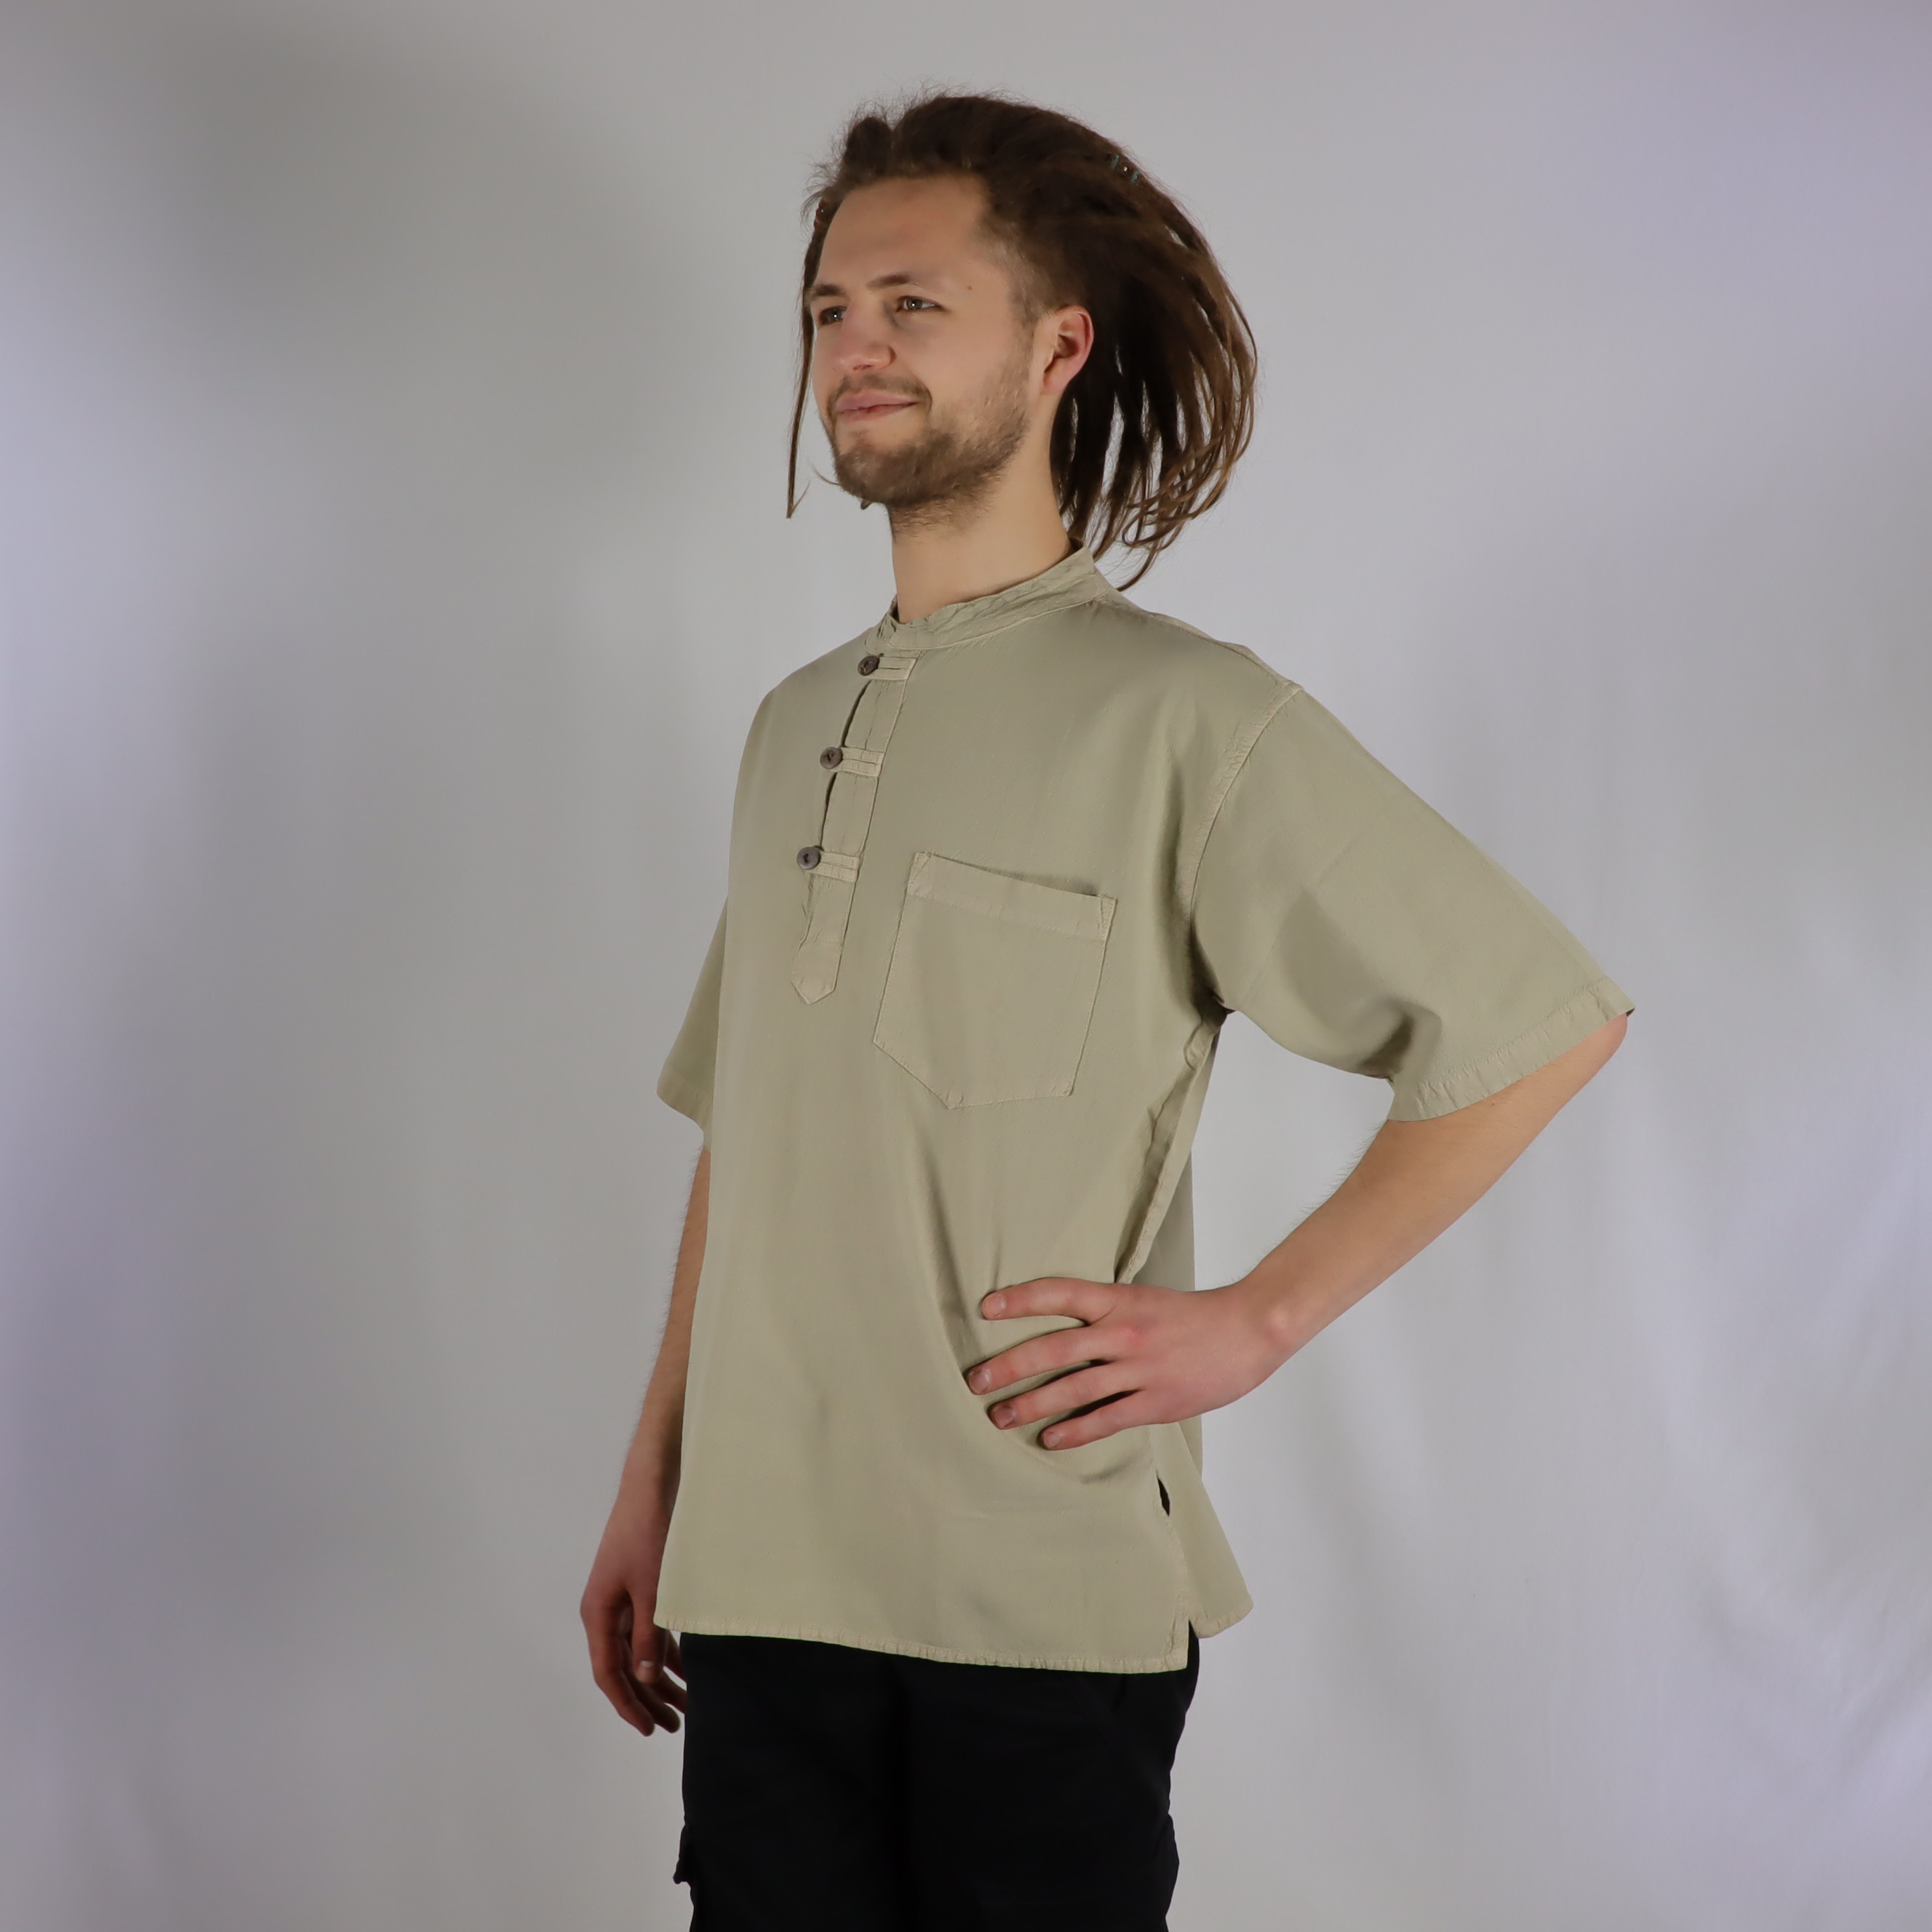 Hemd mit Knöpfen - UniColor - 100% Baumwolle - Kurzarm mit Stehkragen für coole Sommer Tage - chic, lässig und bequem für Freizeit und Alltag - Fair gehandelt aus Nepal